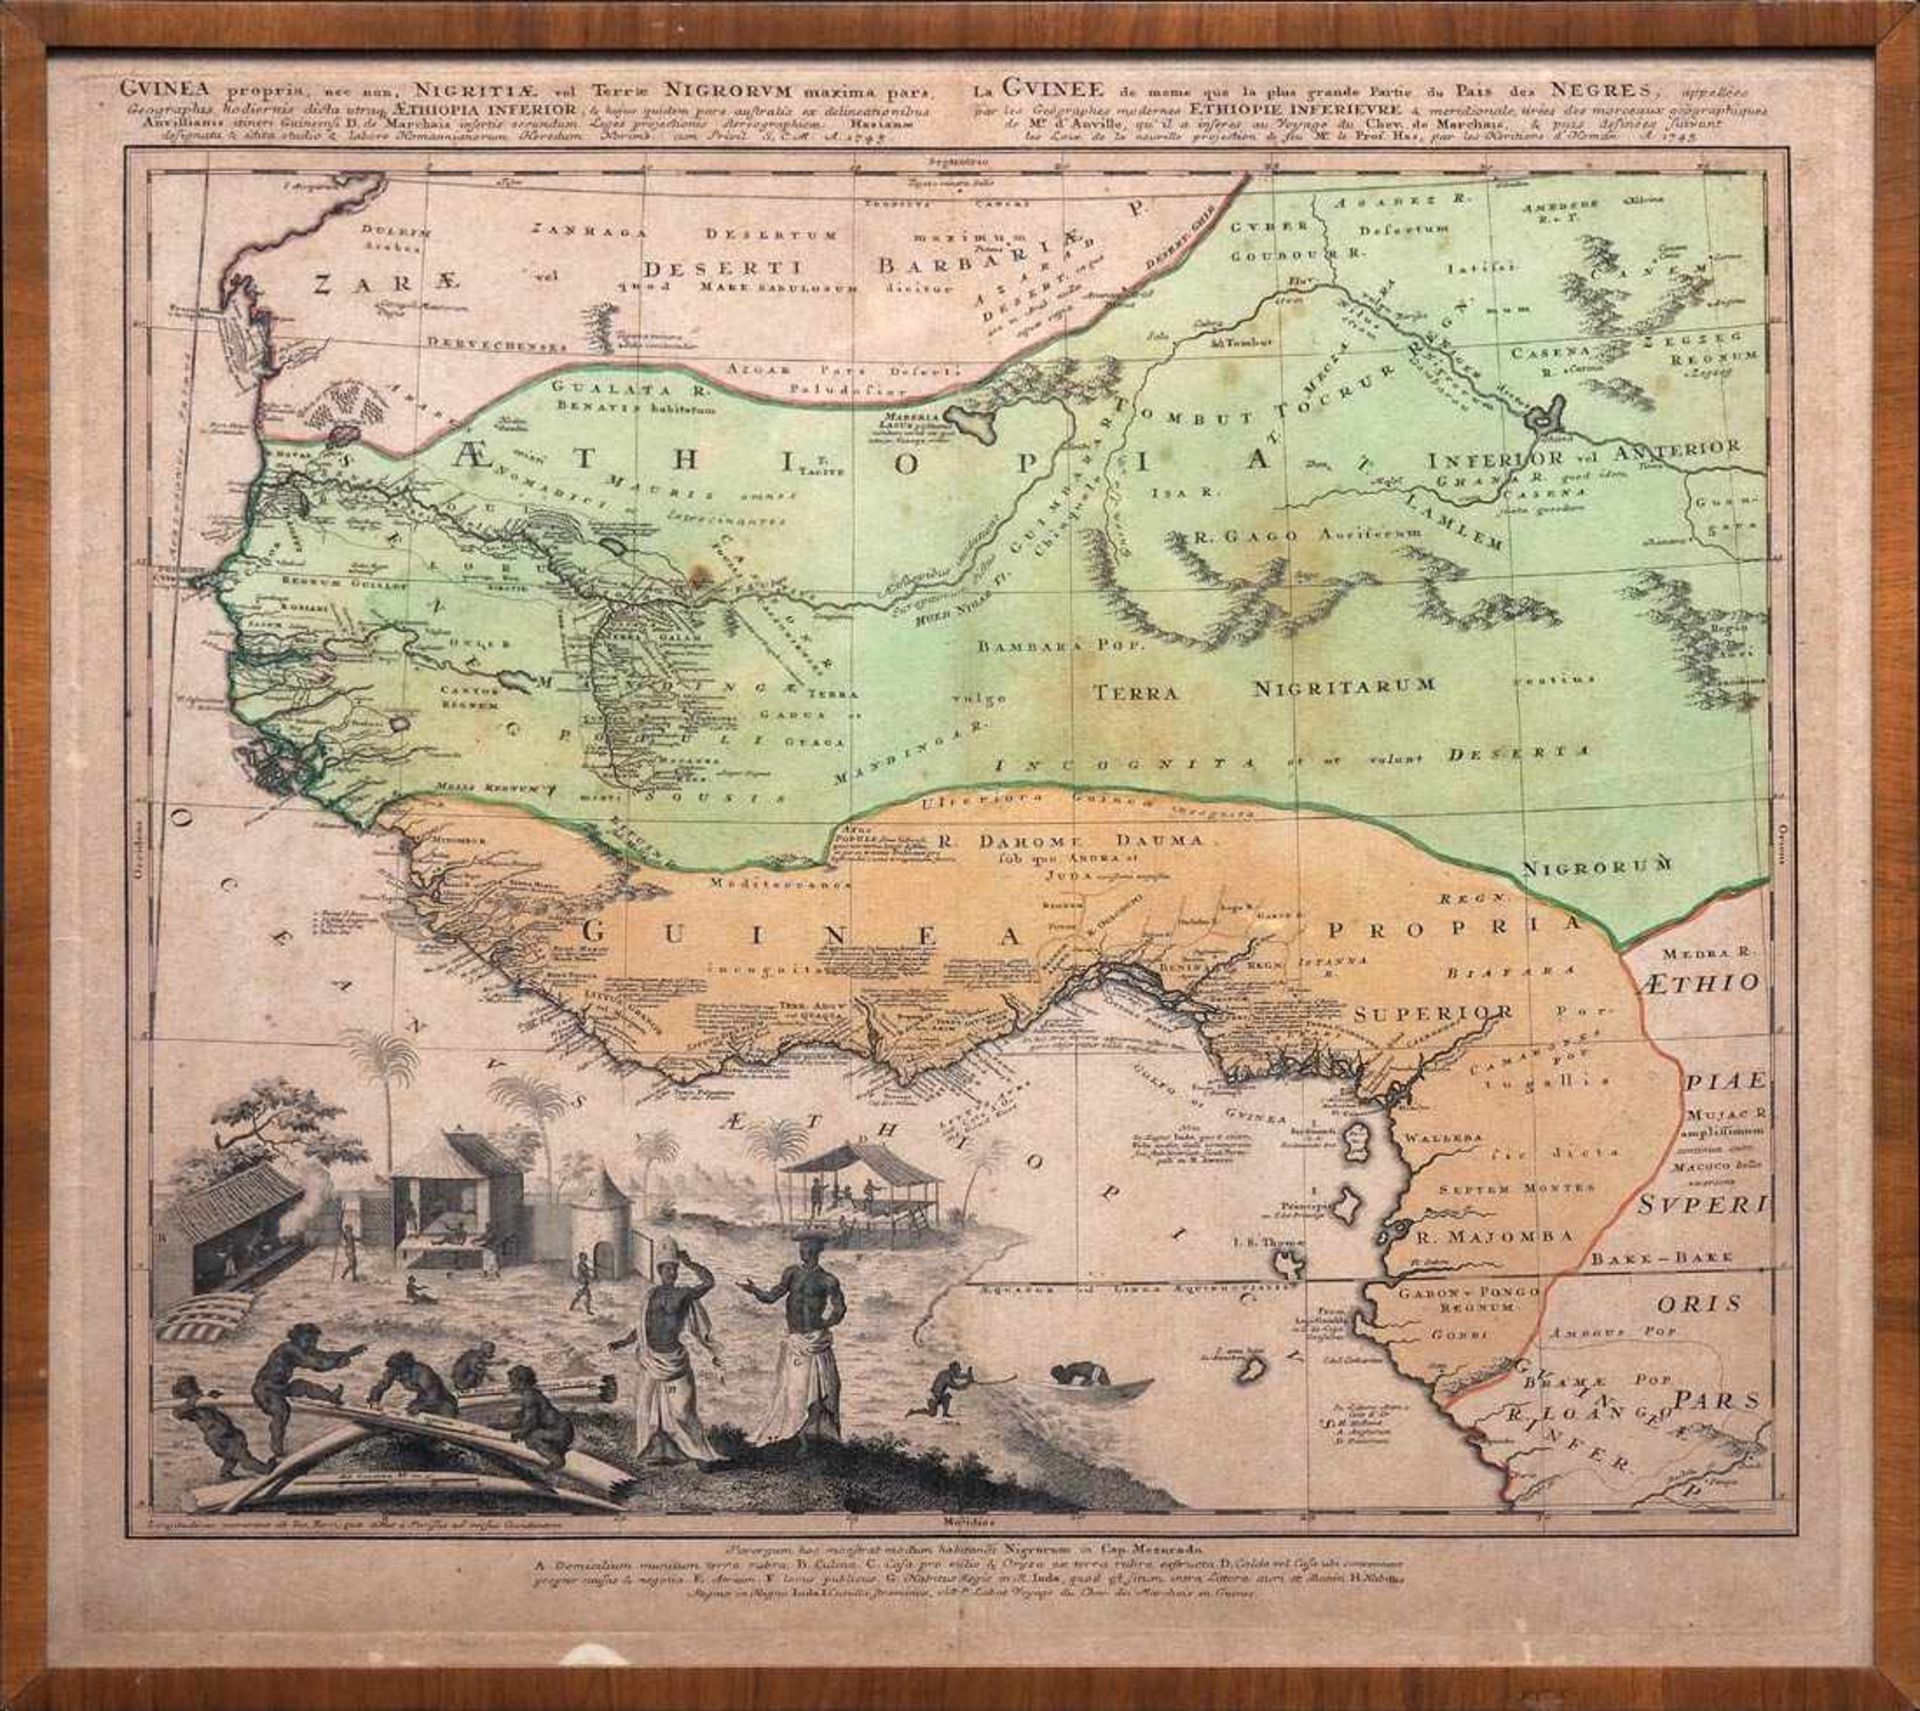 Karte von Äthiopien und GuineaHomann Erben nach Prof. Has, 1743. Lnks unten Figuren und